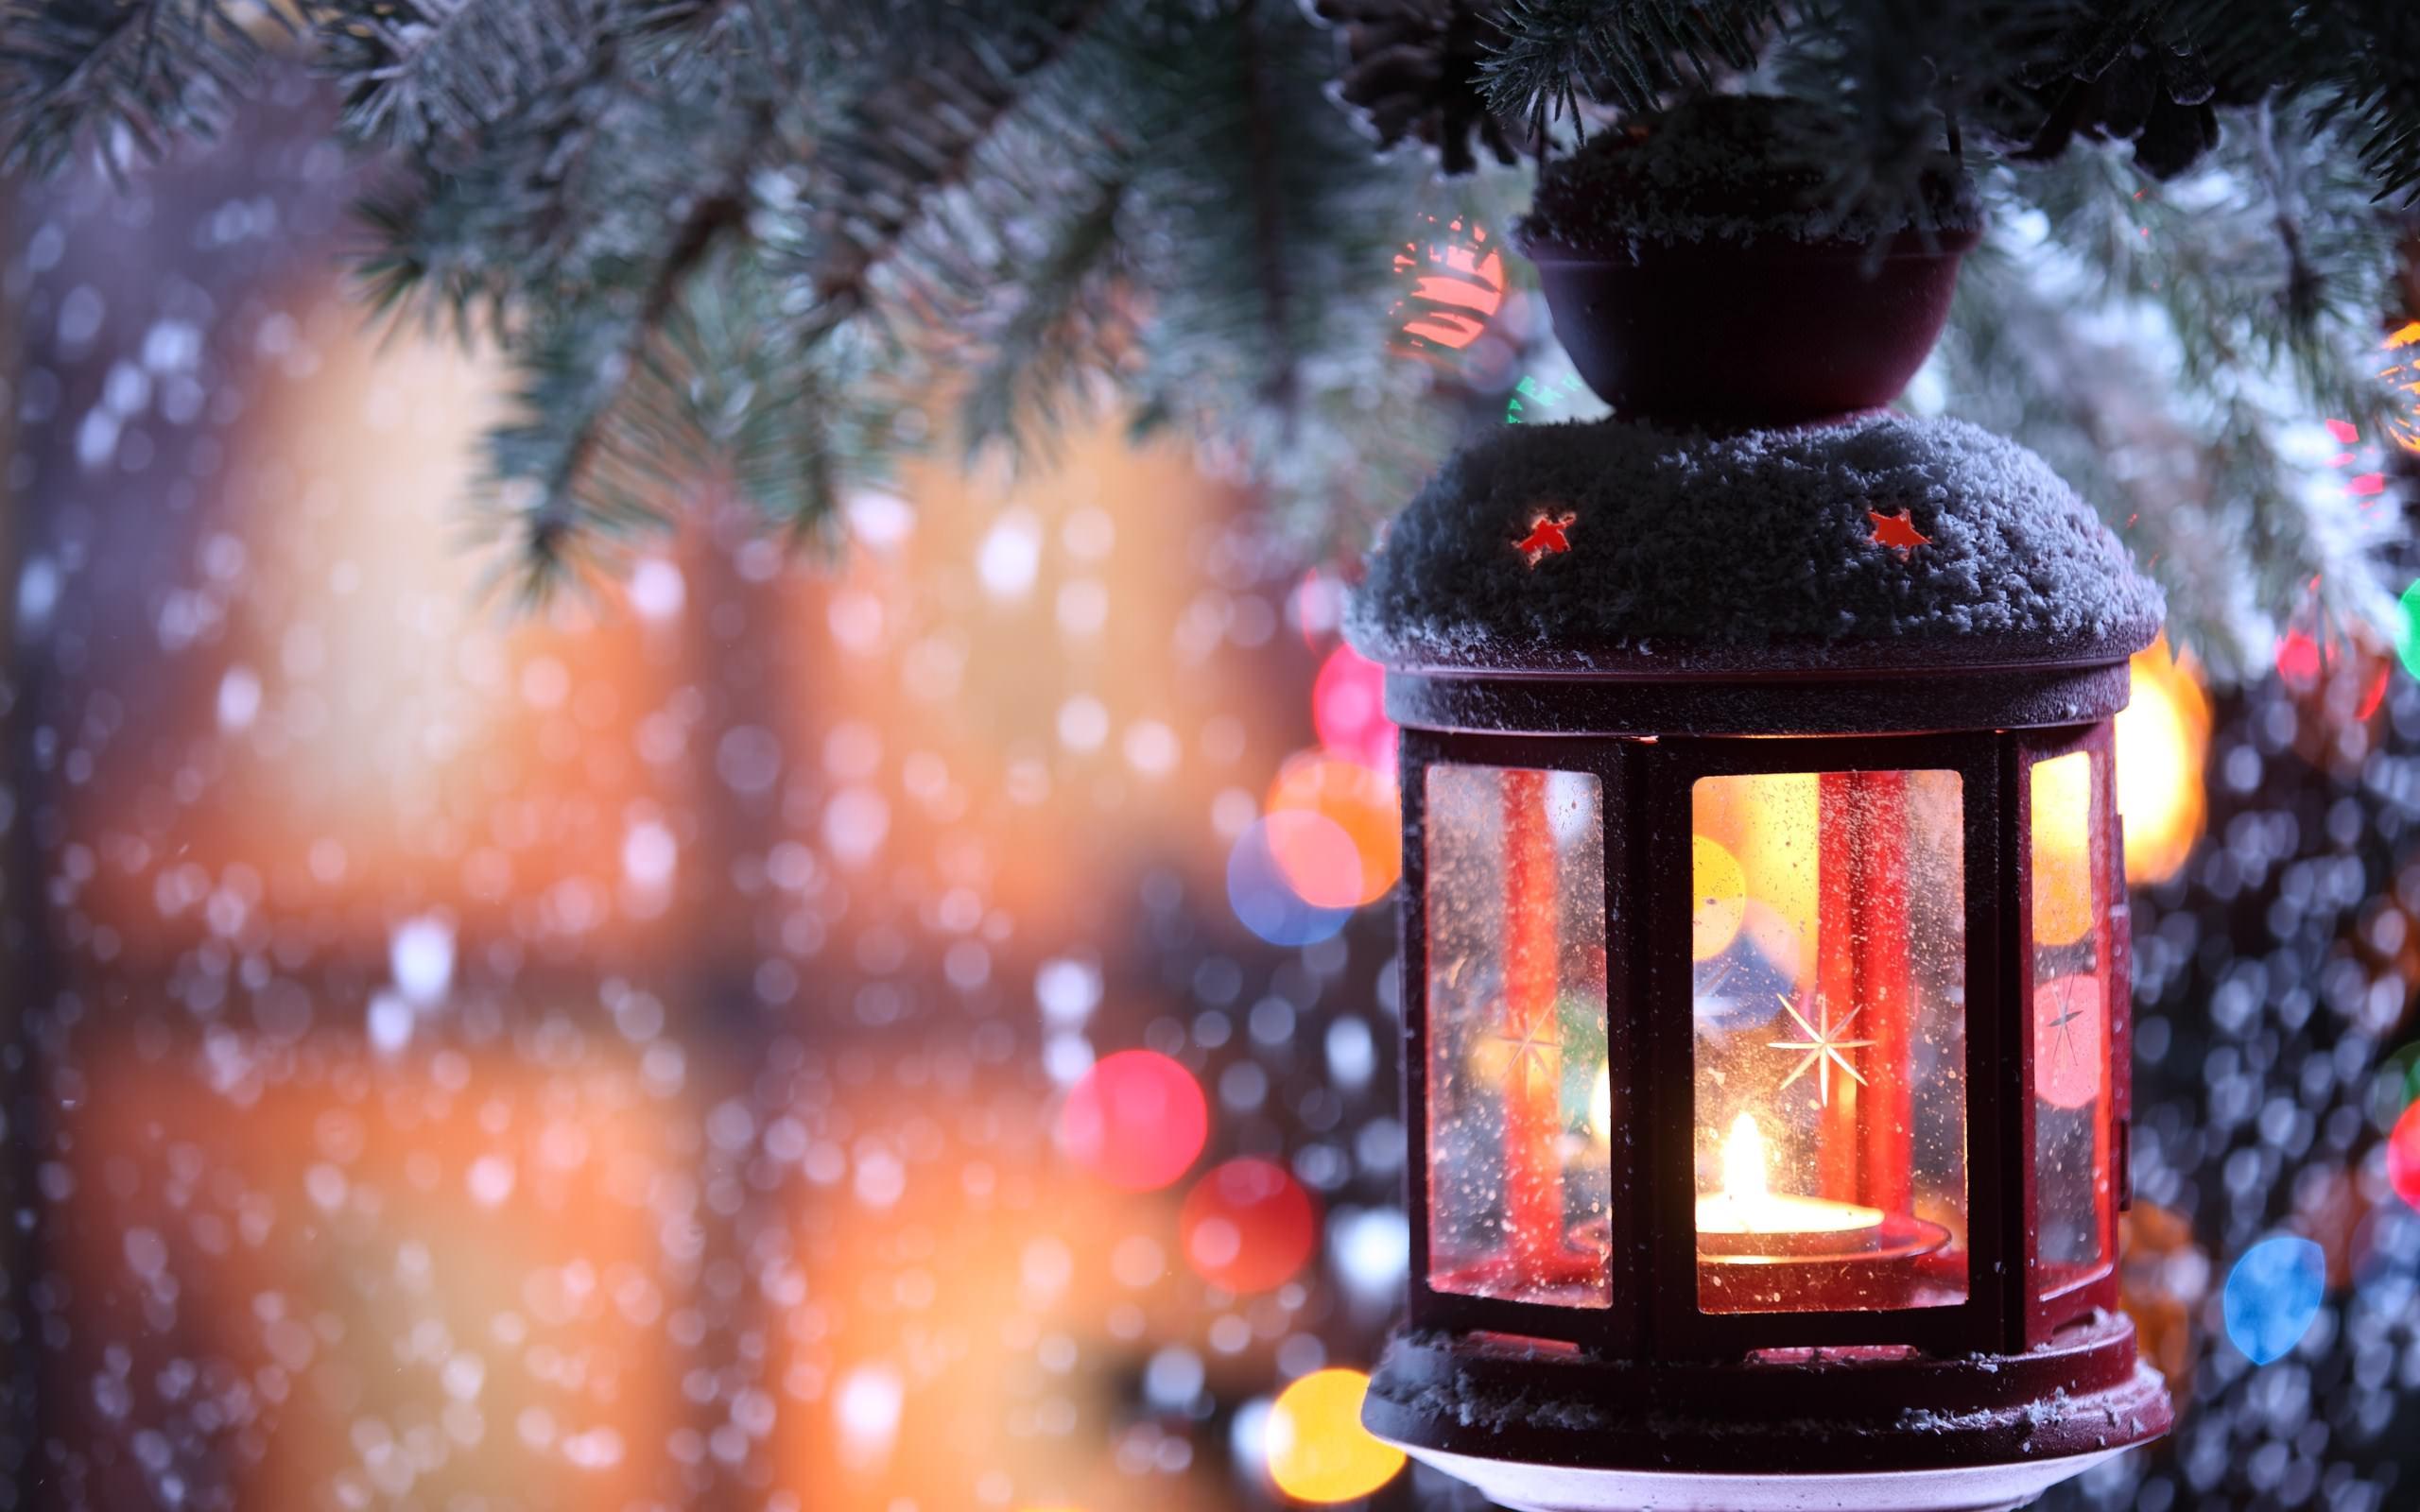 Hình nền đèn lồng giáng sinh trong tuyết rơi là điều hoàn hảo để khơi gợi cảm hứng đầy màu sắc cho mùa lễ hội. Ngắm nhìn những chiếc đèn lồng bay lượn trên nền tuyết trắng, giữa không gian im lìm sẽ mang đến cho bạn những giây phút thư giãn và cảm nhận đầy mãn nhãn.